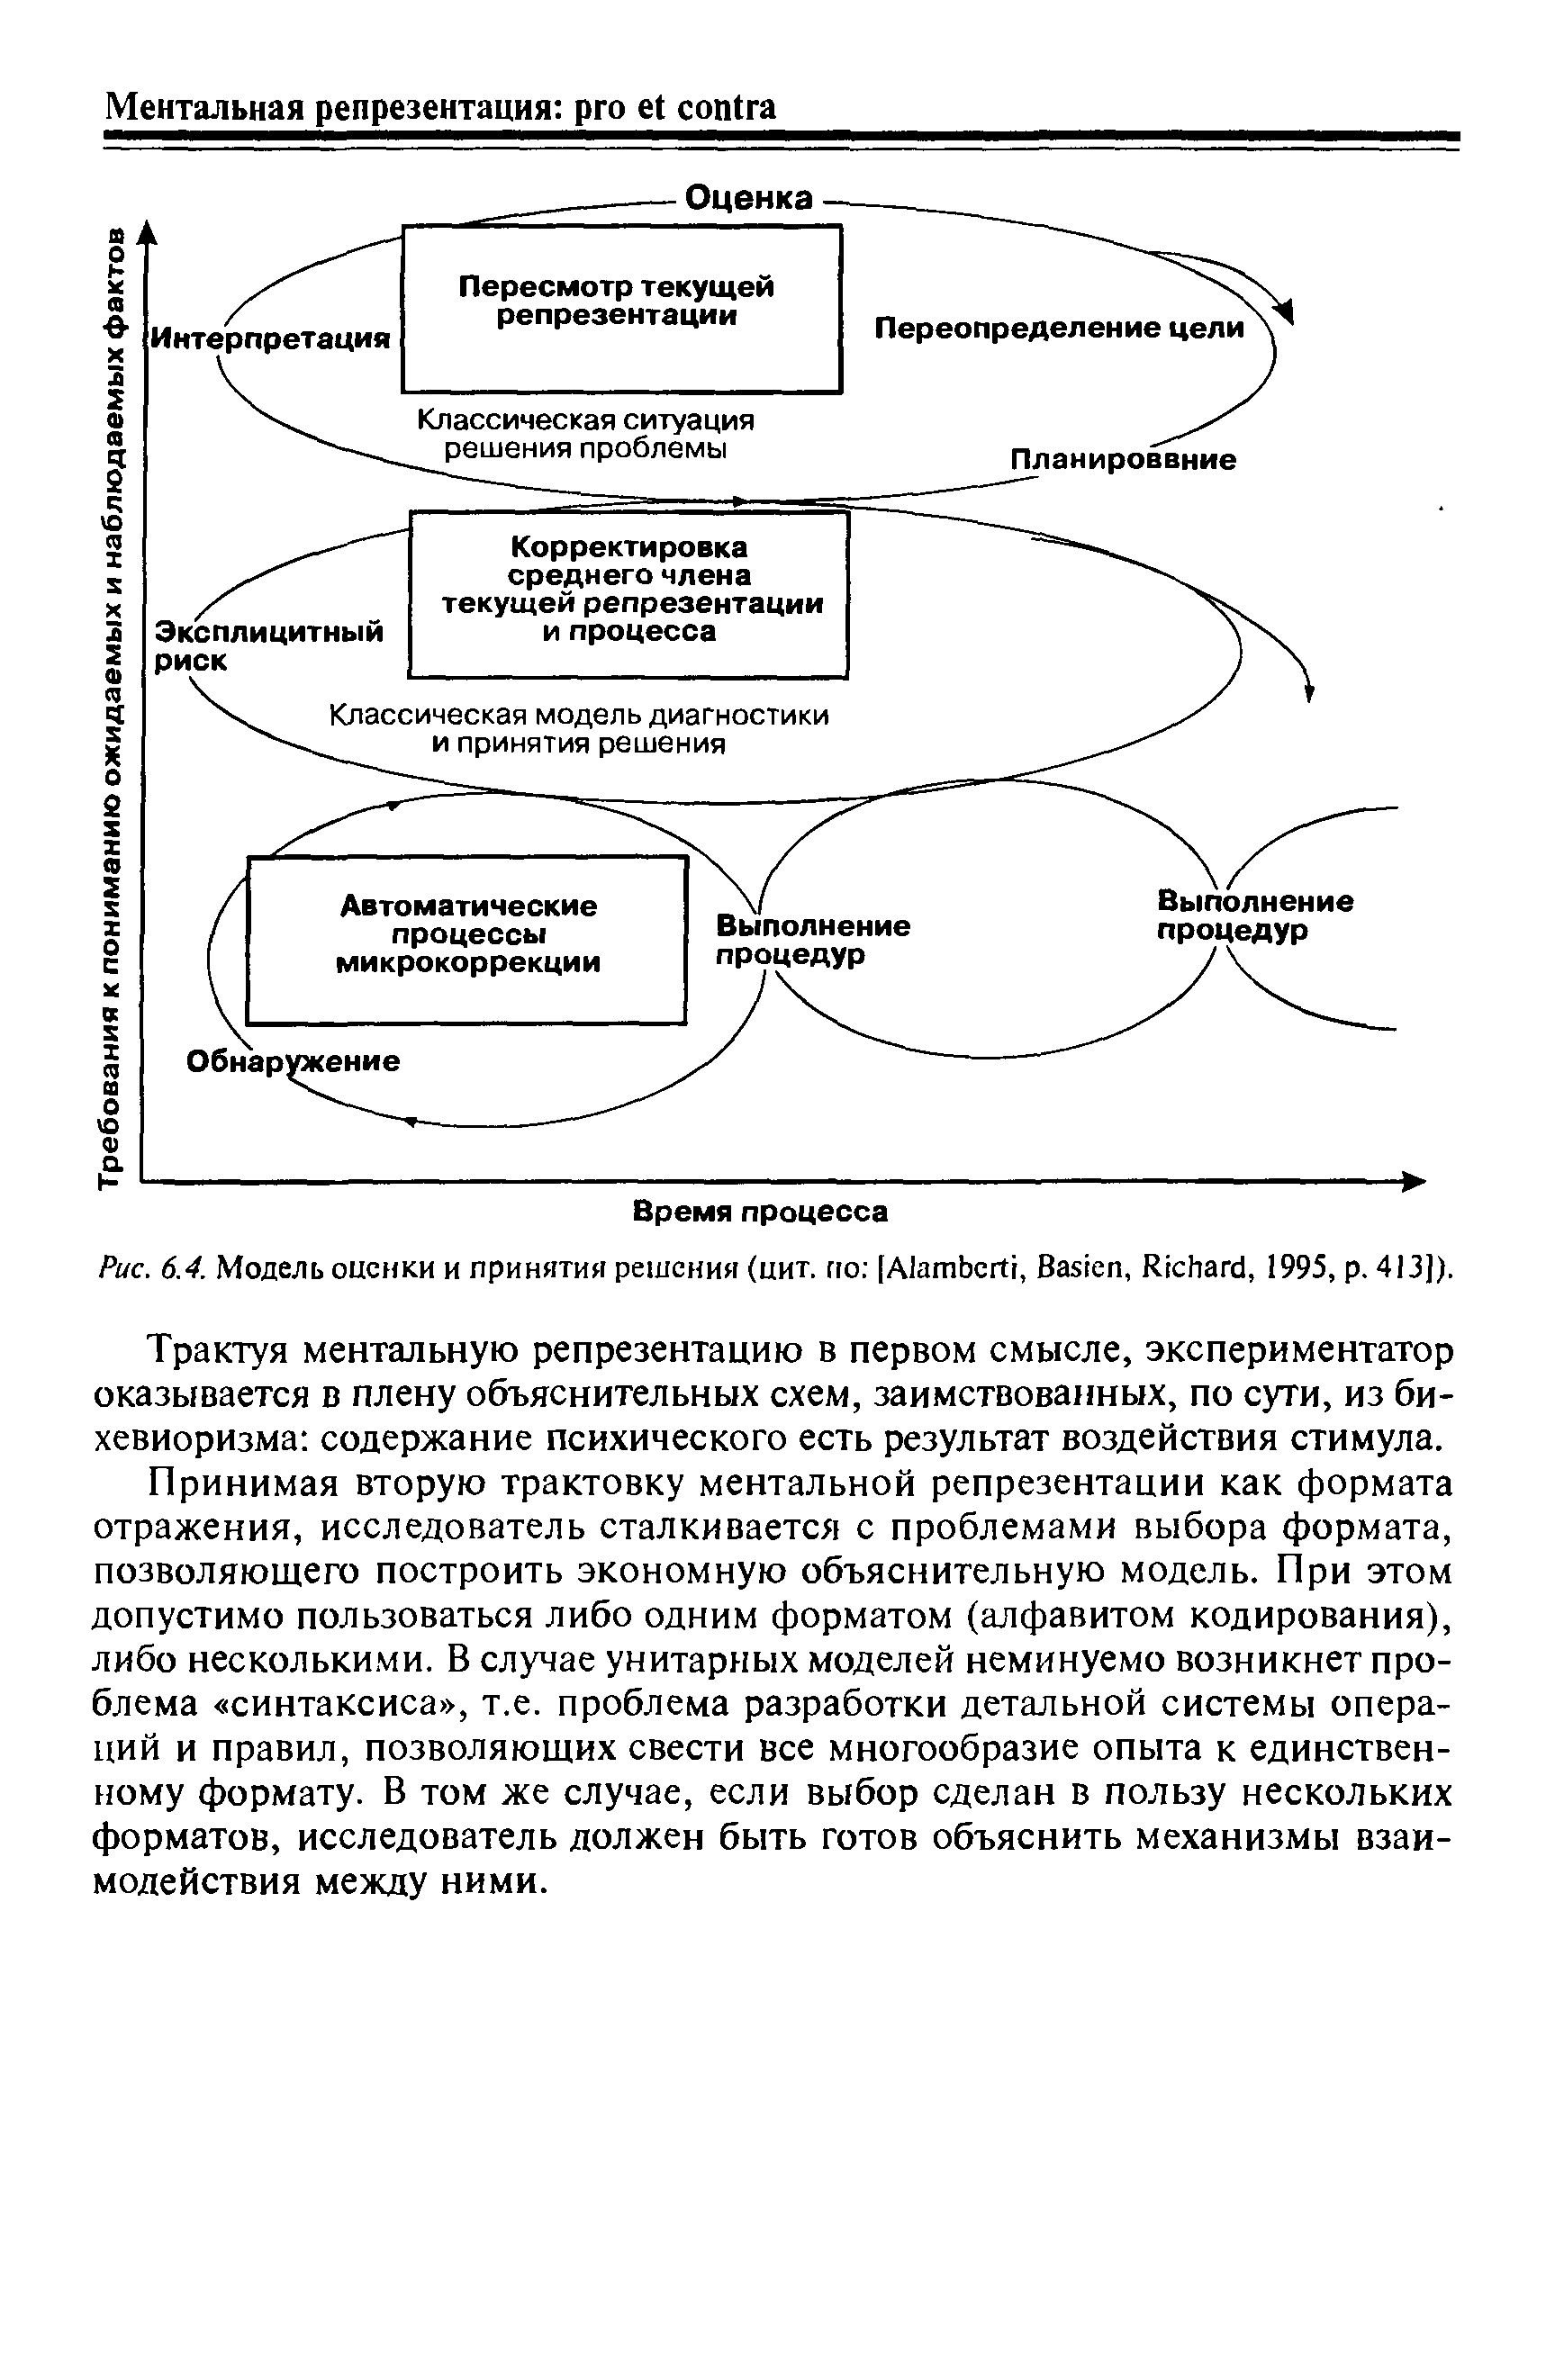 Рис. 6.4. Модель оценки и принятия решения (цит. по [A , B , R , 1995, р. 413]).